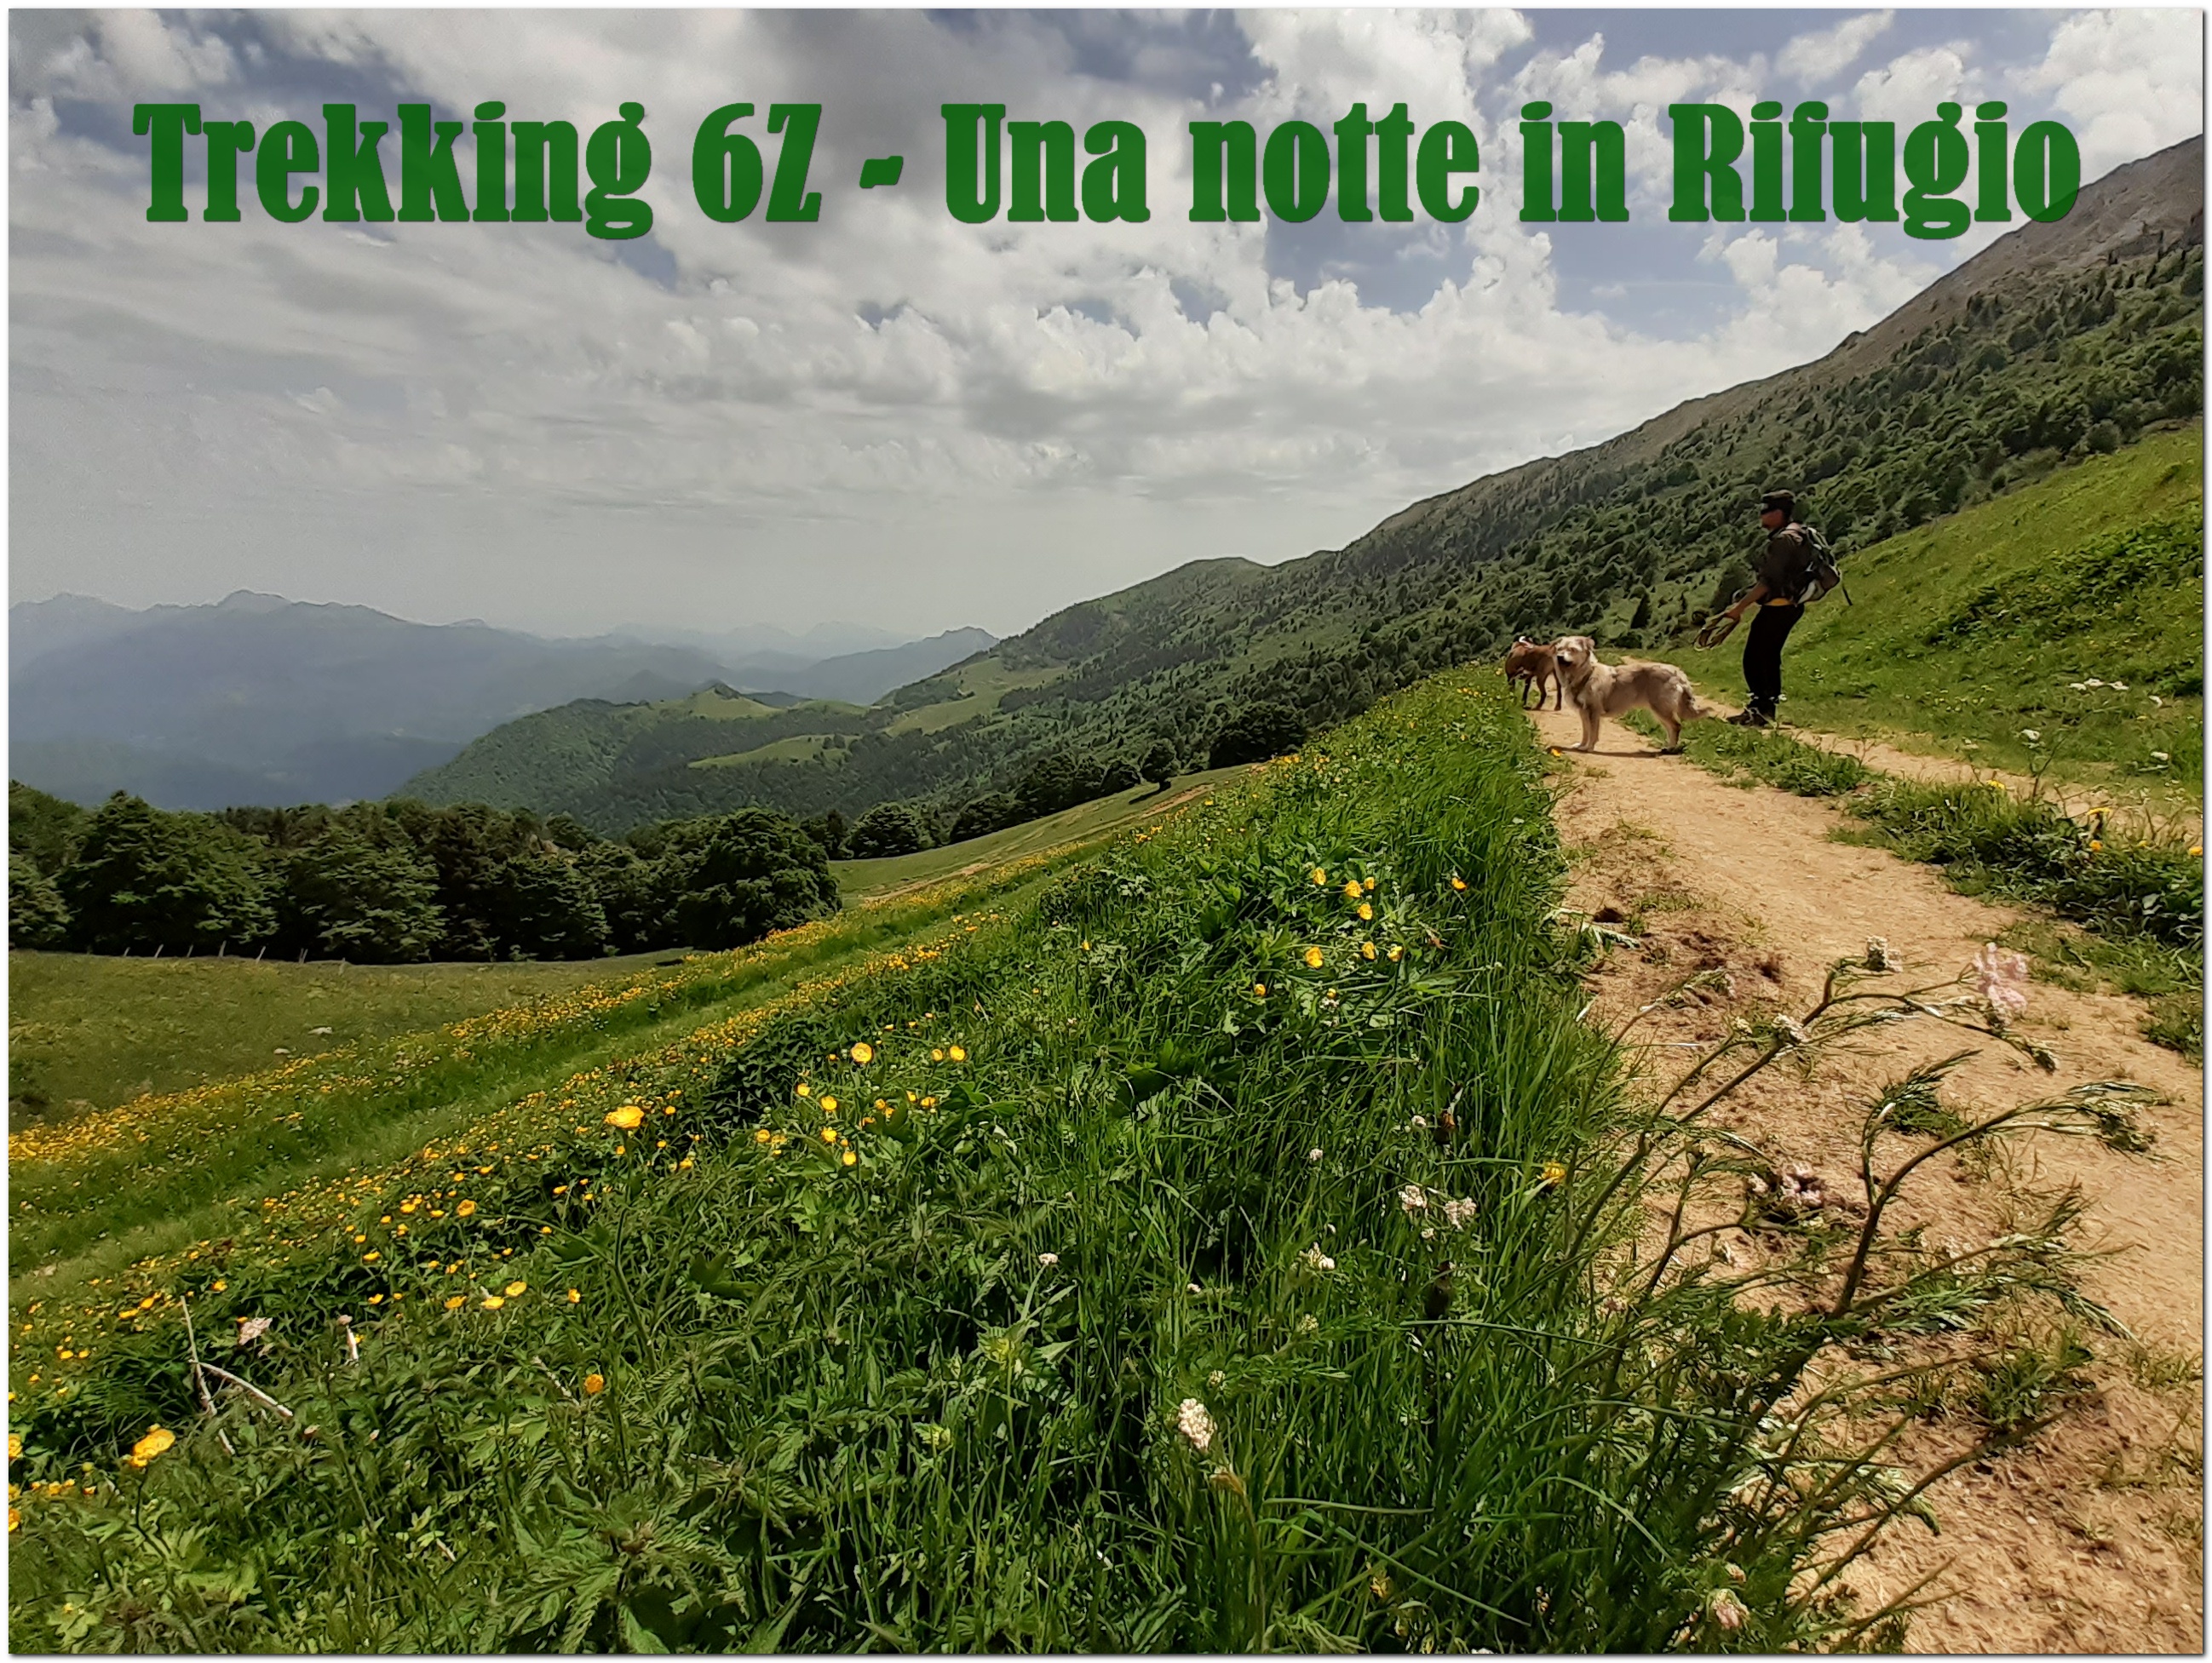 Trekking-Una Notte In Rifugio @ 6Z Centro Cinofilo